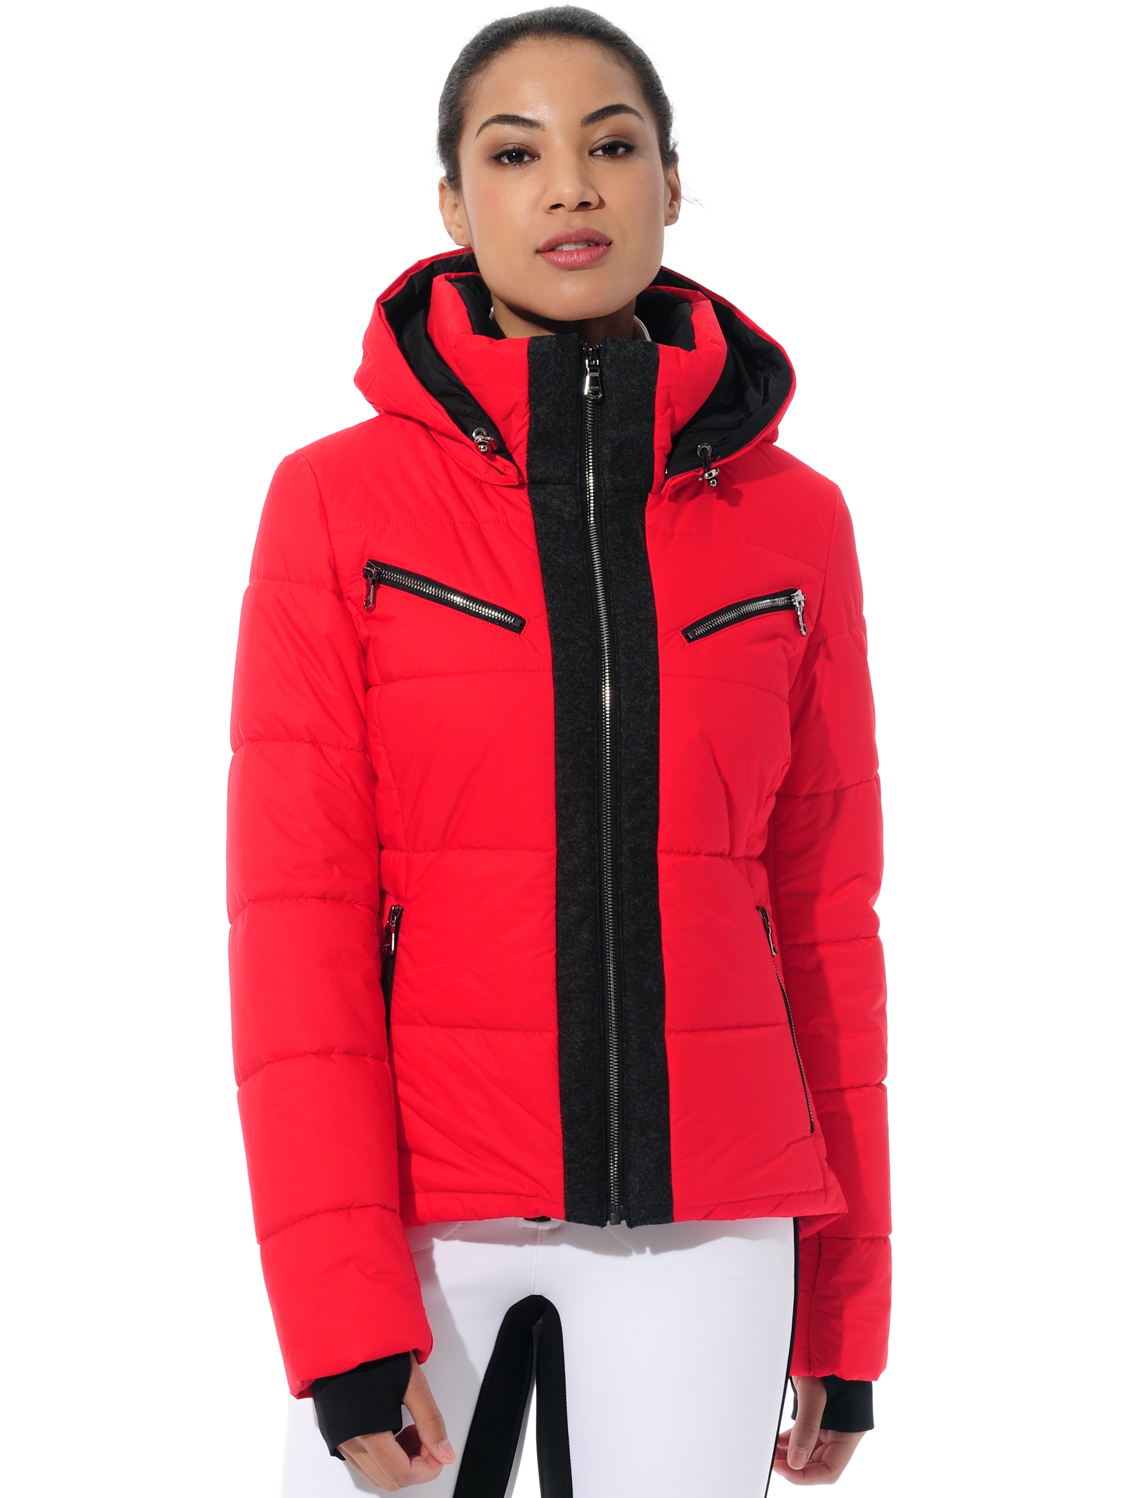 stretch ski jacket red 